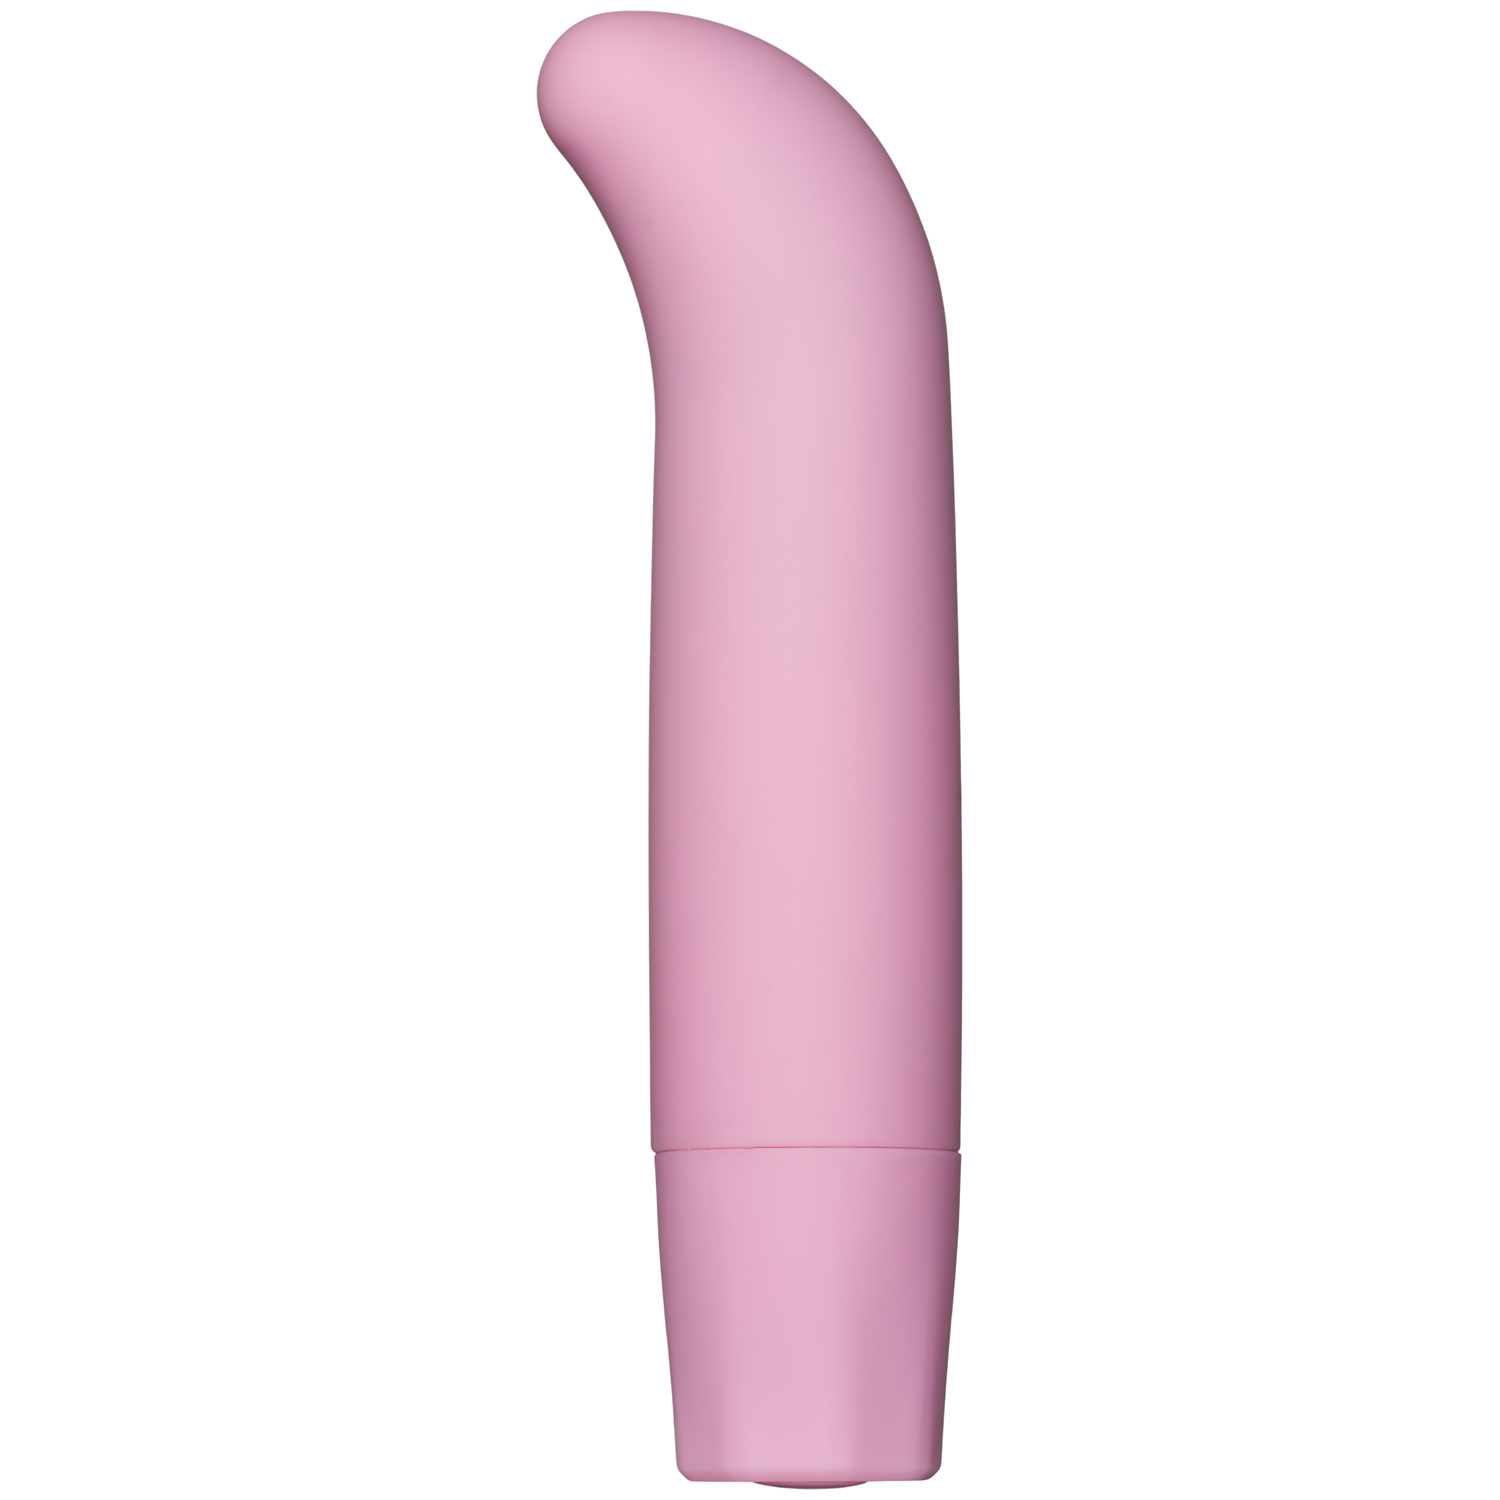 baseks Curve G-punkts Mini Vibrator - Pink